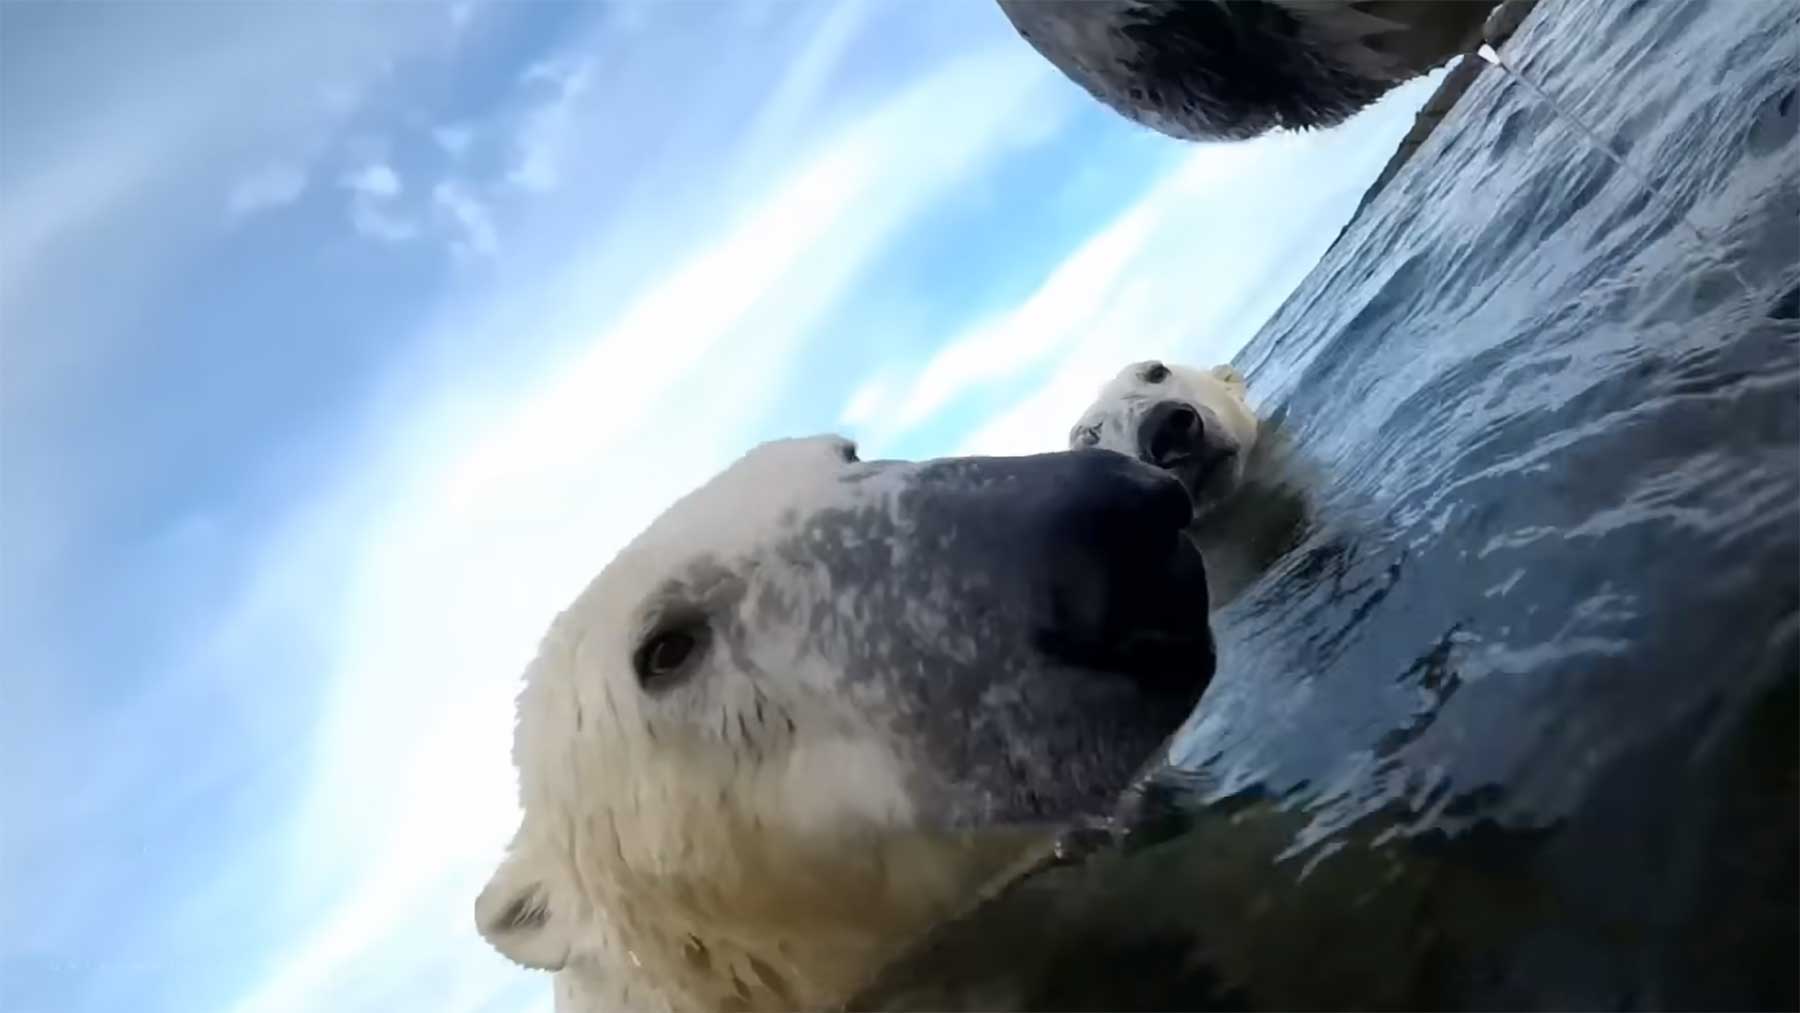 POV: Halsbandkamera zeigt Leben aus Sicht eines Eisbären